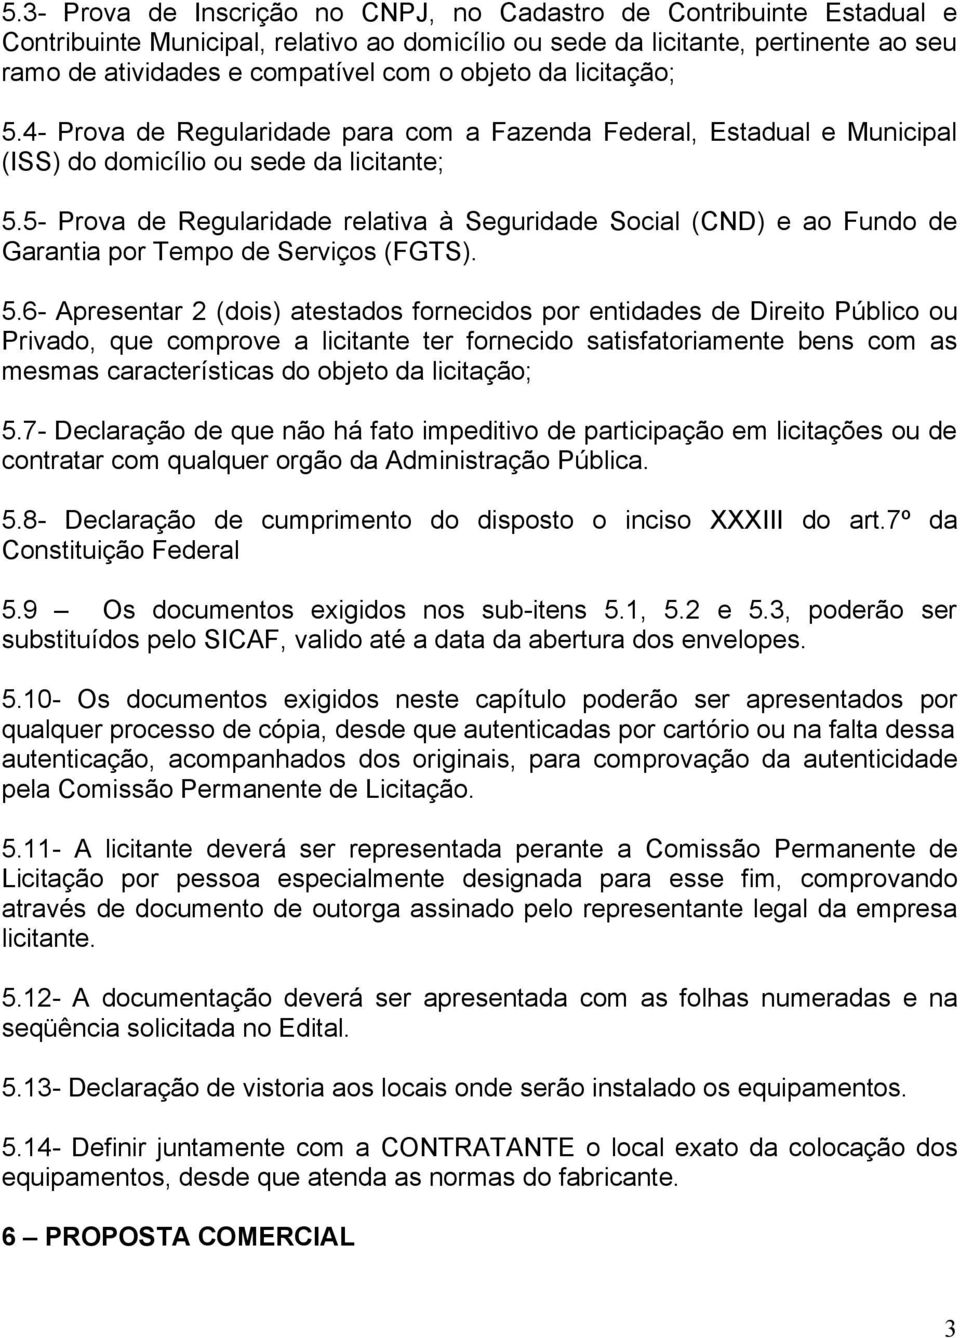 5- Prova de Regularidade relativa à Seguridade Social (CND) e ao Fundo de Garantia por Tempo de Serviços (FGTS). 5.